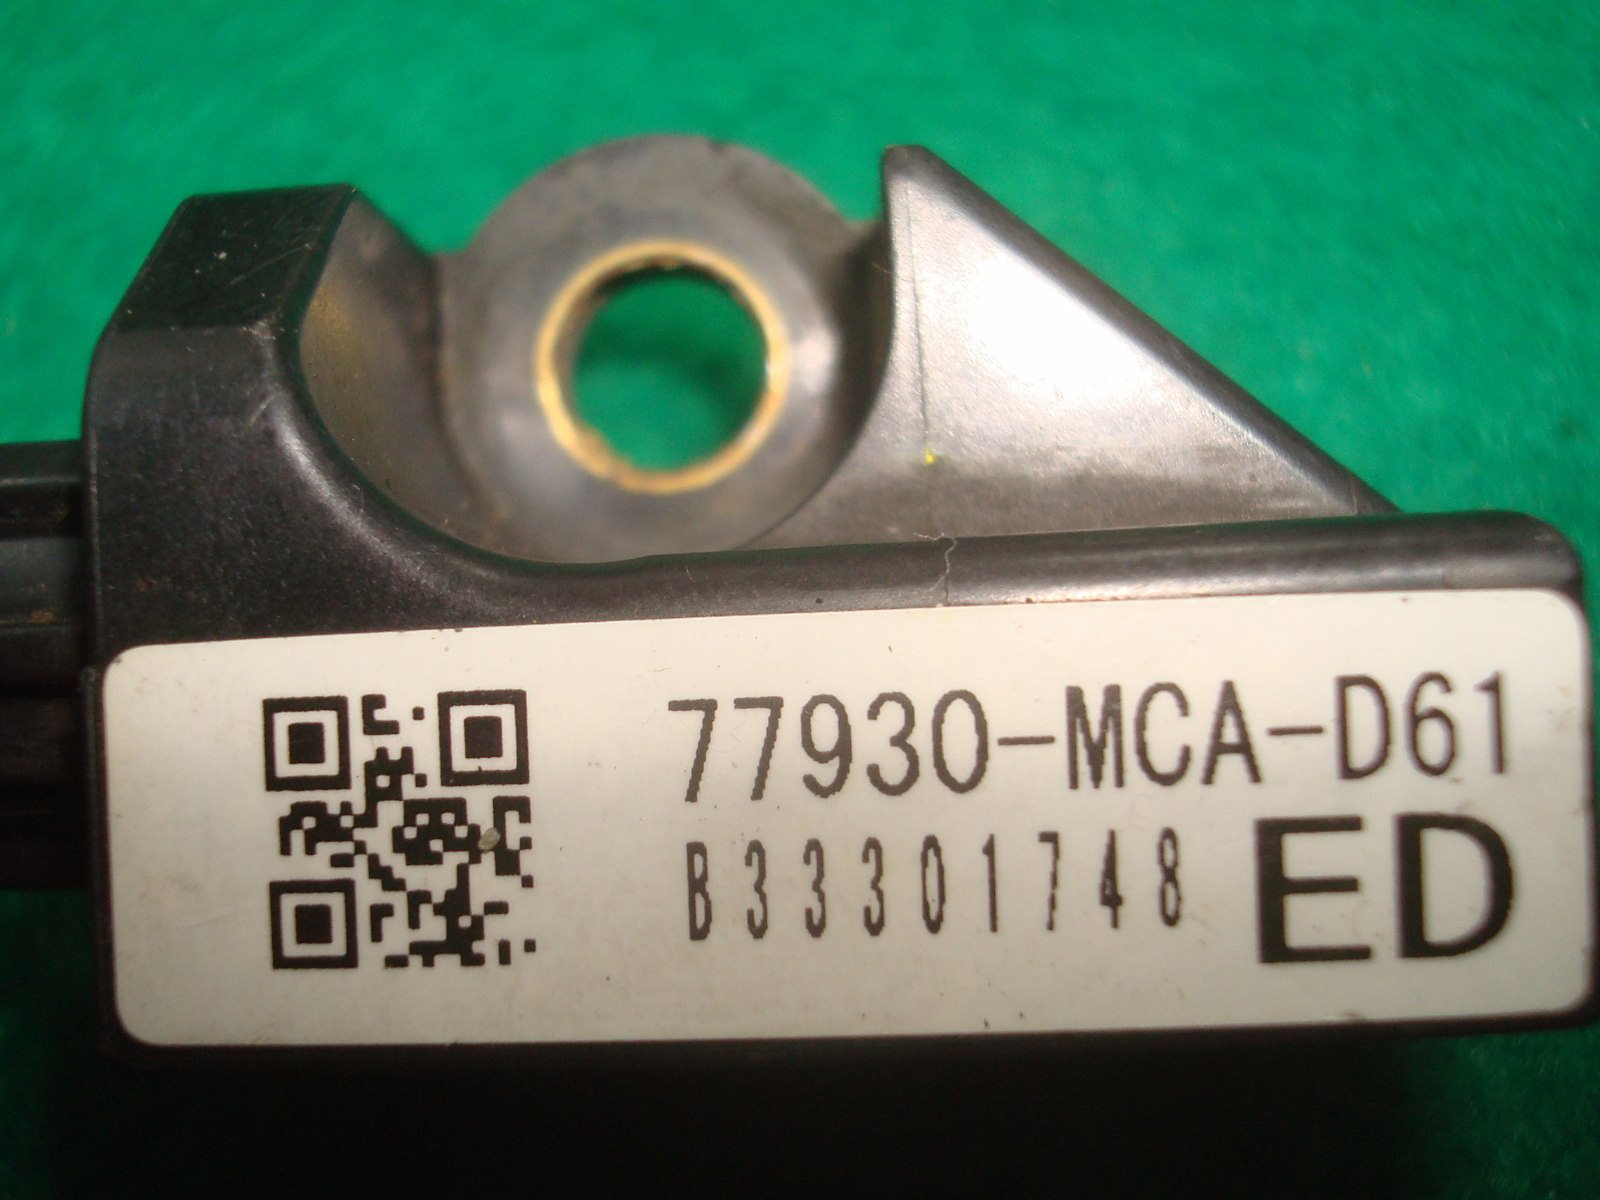 Goldwing GL1800 07 to '16 #3 Air Bag Sensor 77930-MCA-D61